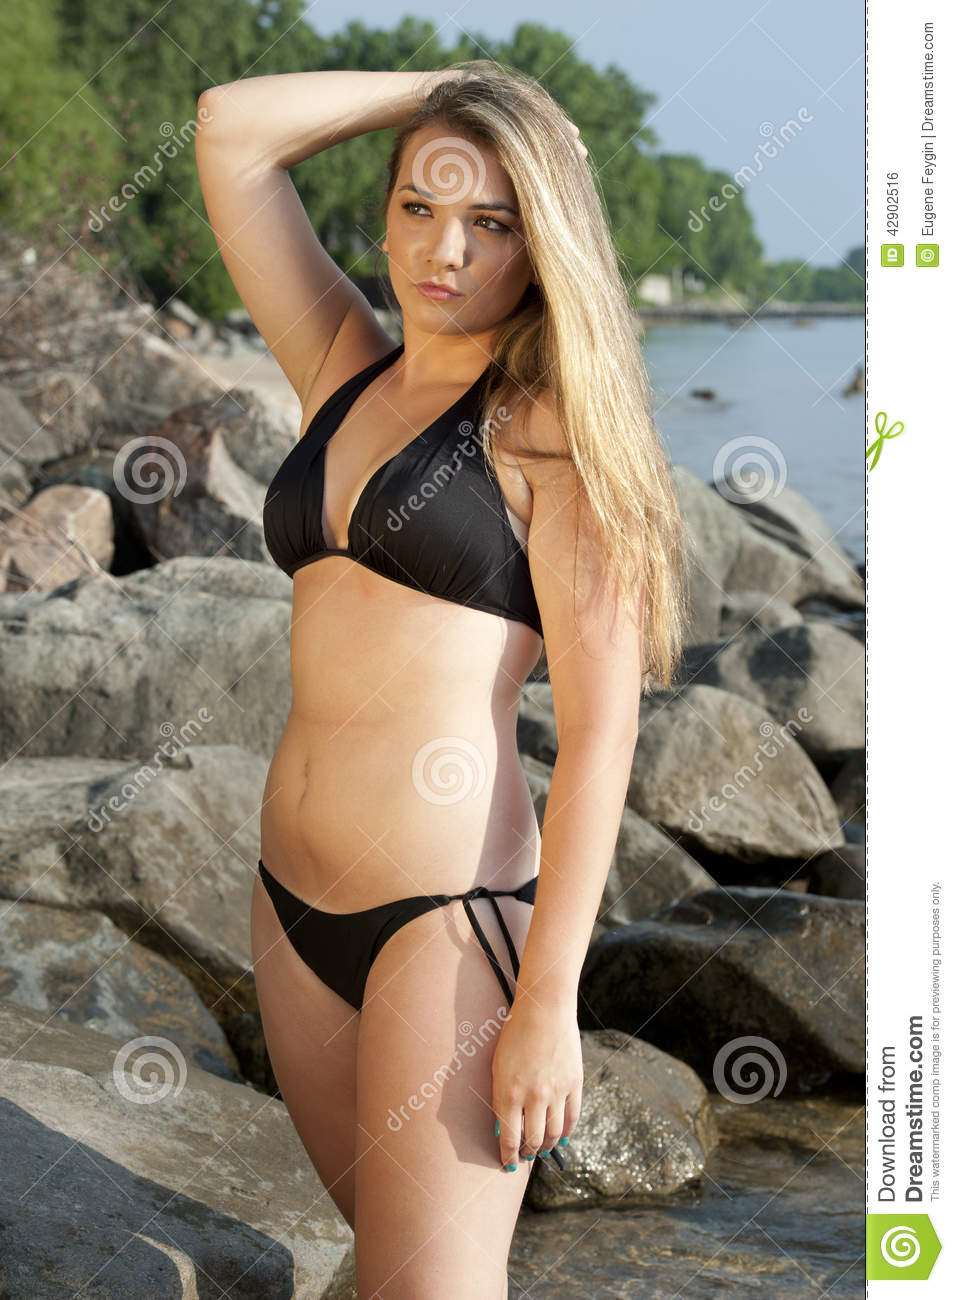 best of Model Bikini young female